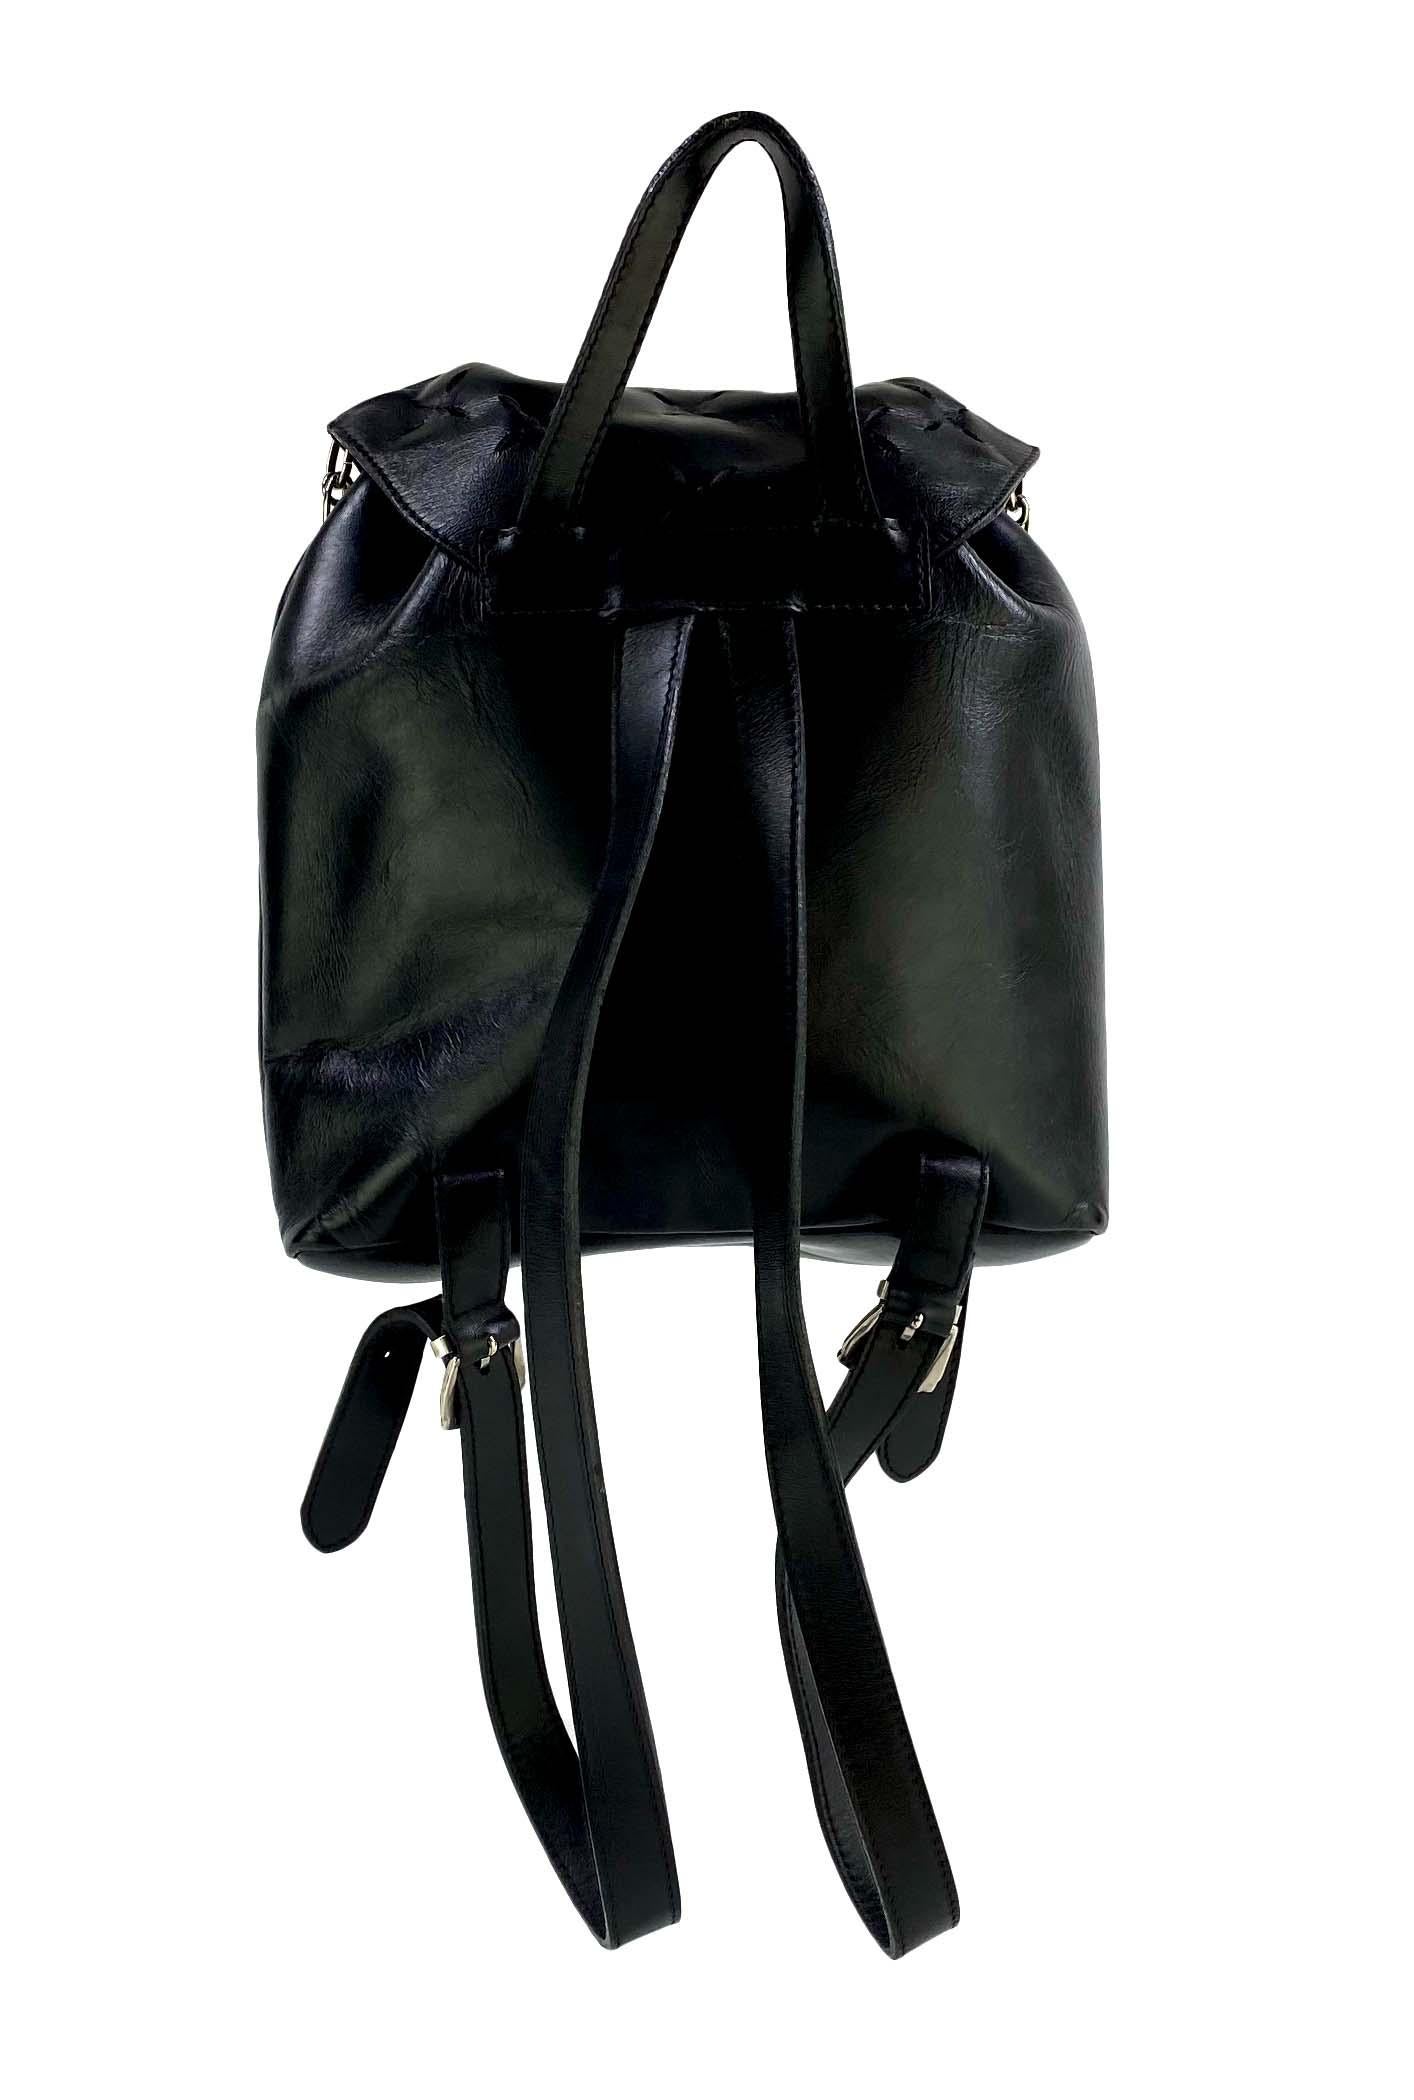 S/S 1994 Gianni Versace Mini sac à dos de défilé en cuir noir avec épingles de sûreté découpées en vente 1